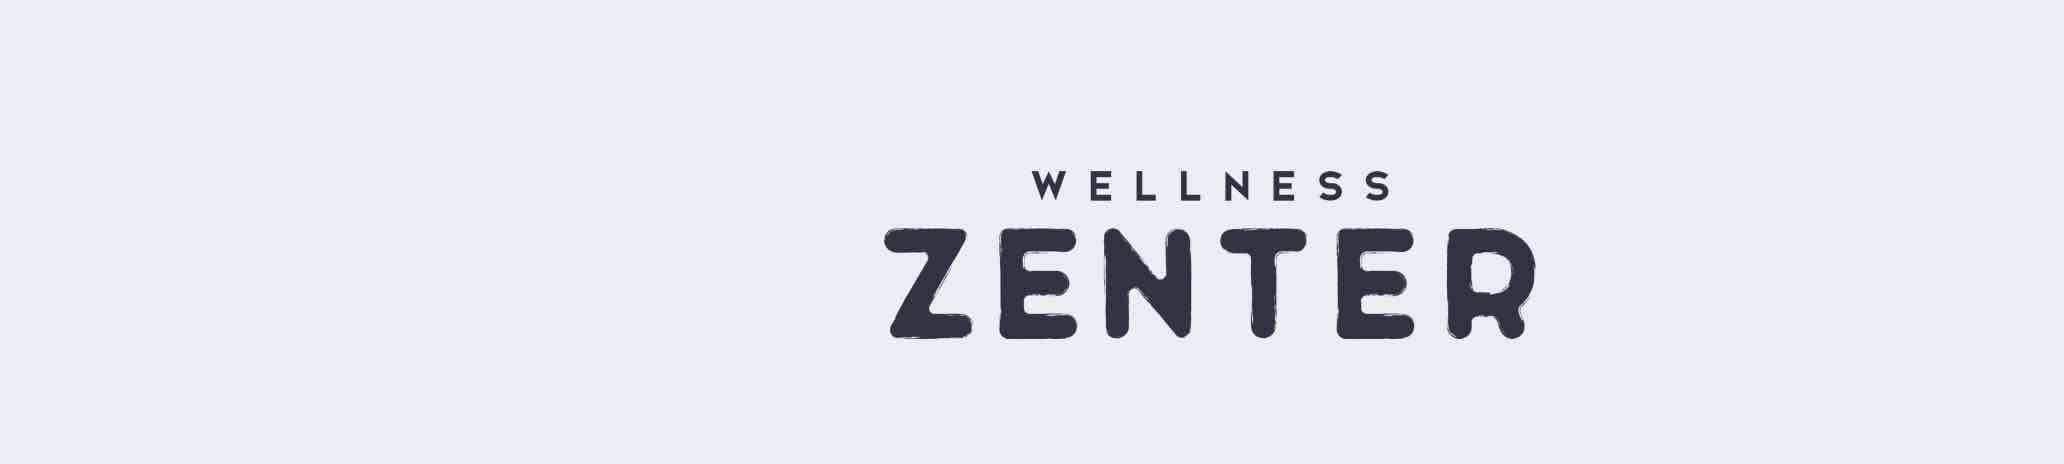 Wellness Zenter banner.